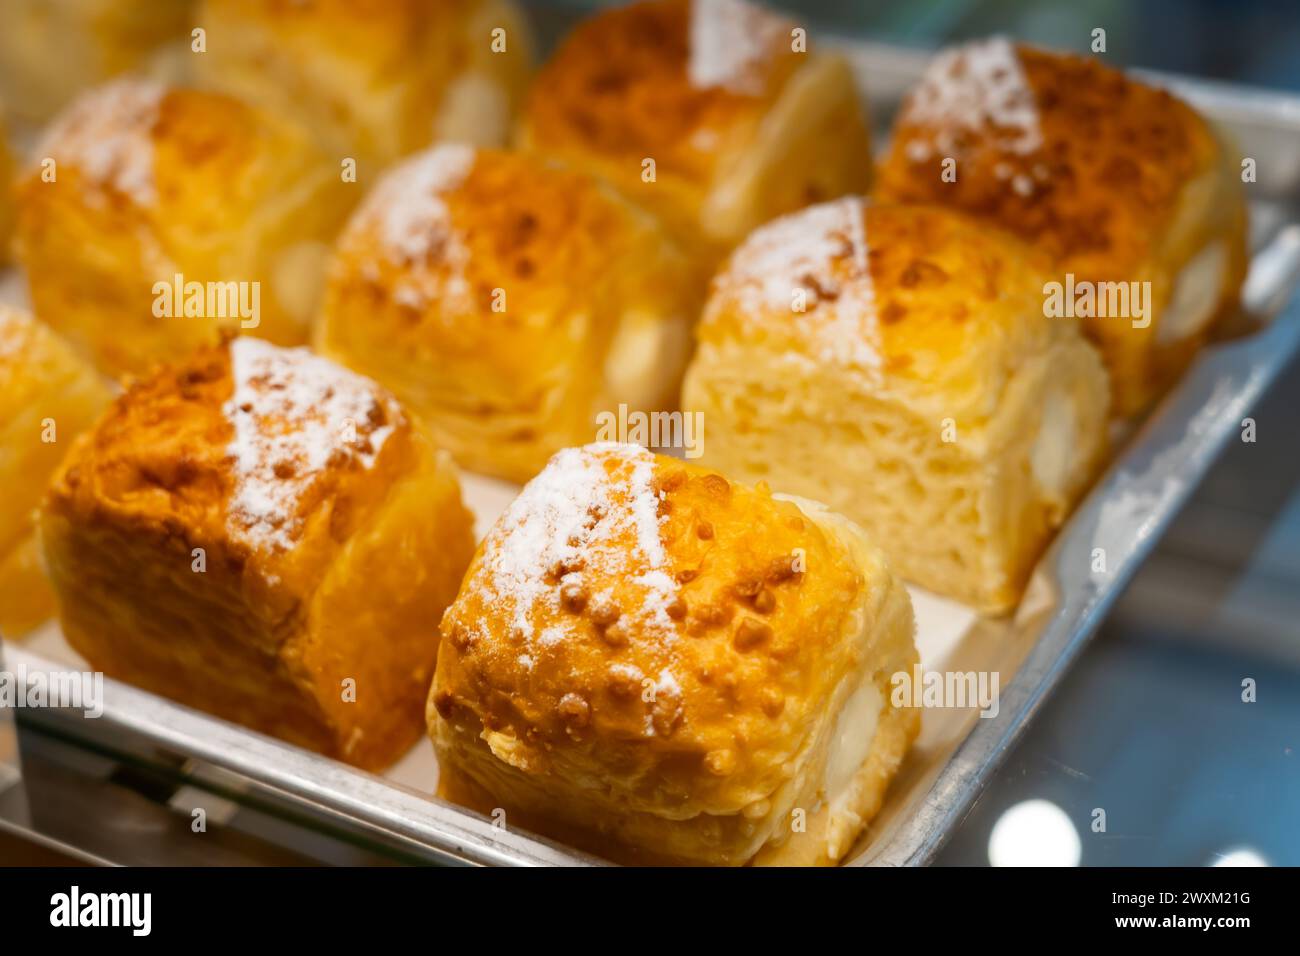 Petits pains luxuriants saupoudrés de sucre en poudre dans une belle vitrine de boulangerie. Banque D'Images